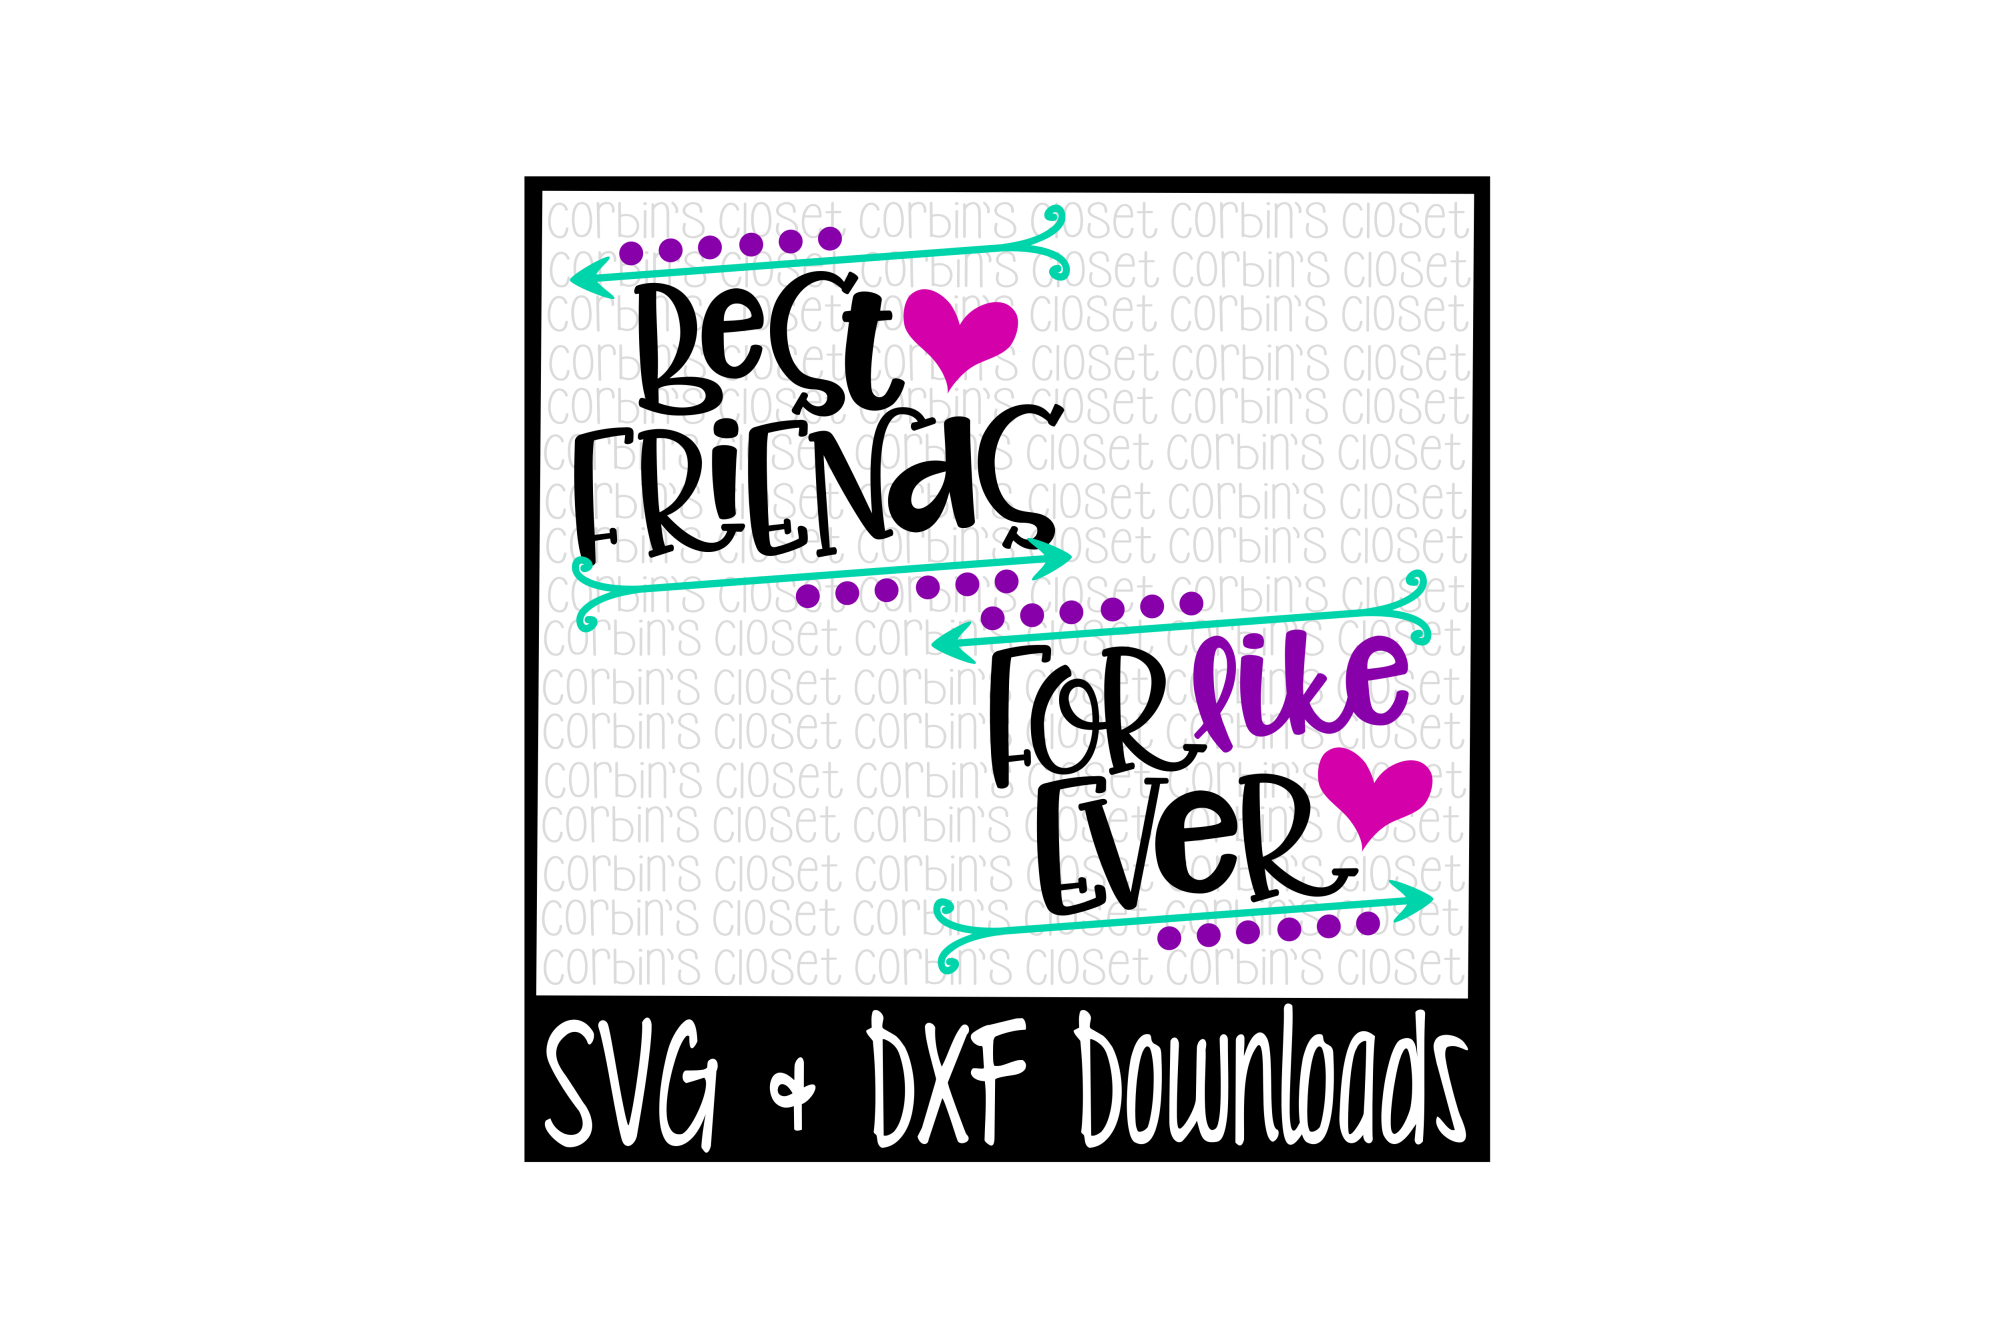 Free Free 331 Best Friends Svg Bundle SVG PNG EPS DXF File